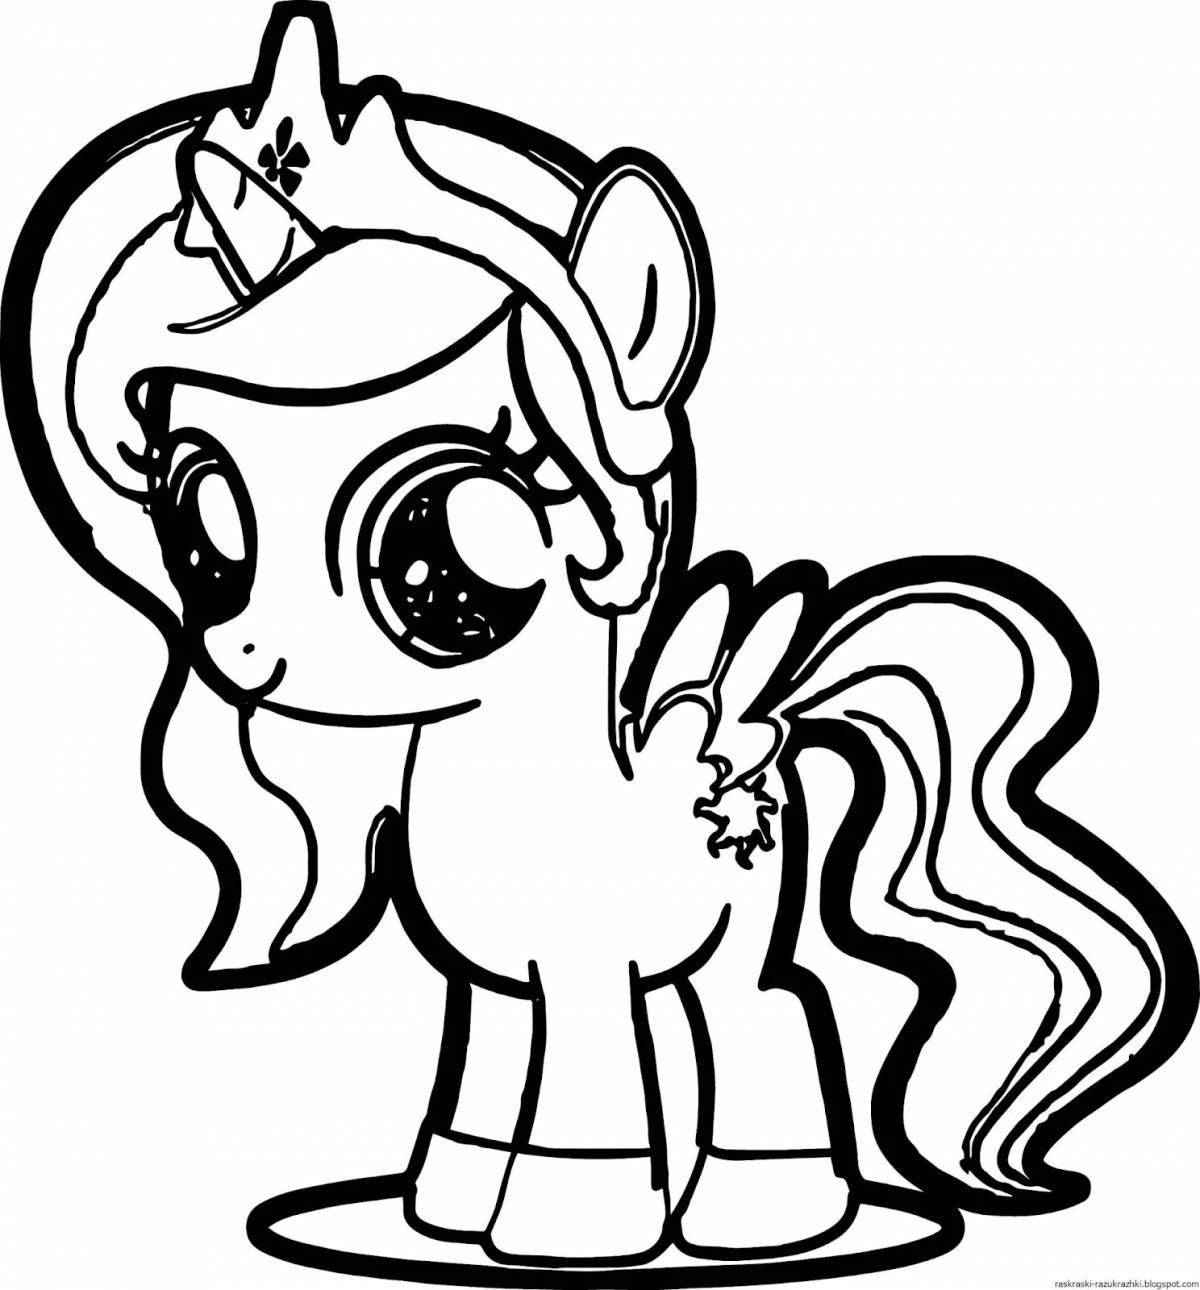 Раскраски My Little Pony (Дружба - это чудо) для девочек распечатать